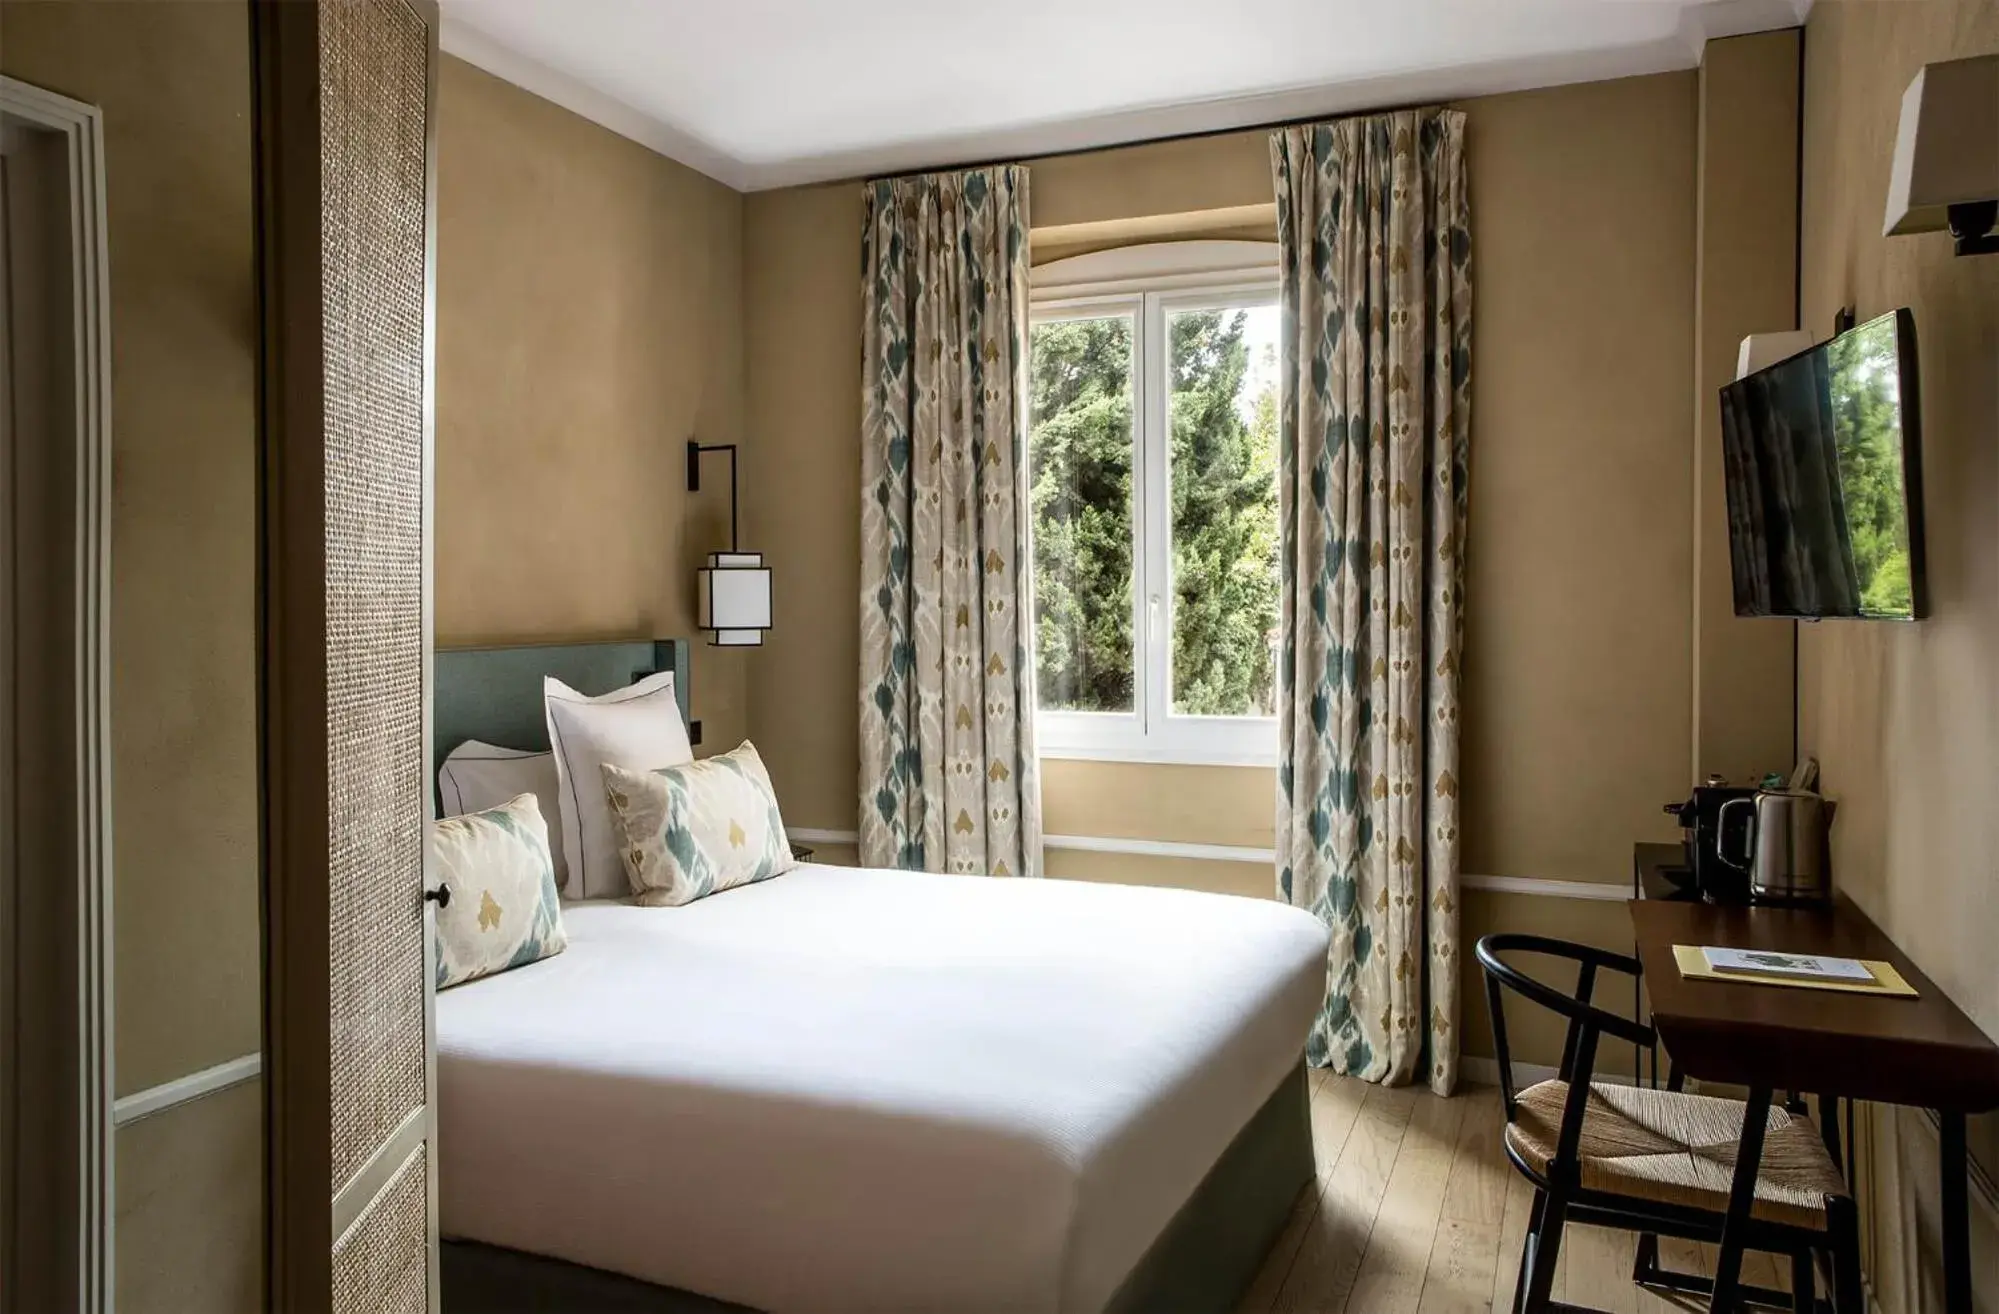 Photo of the whole room, Bed in Le Pigonnet - Esprit de France